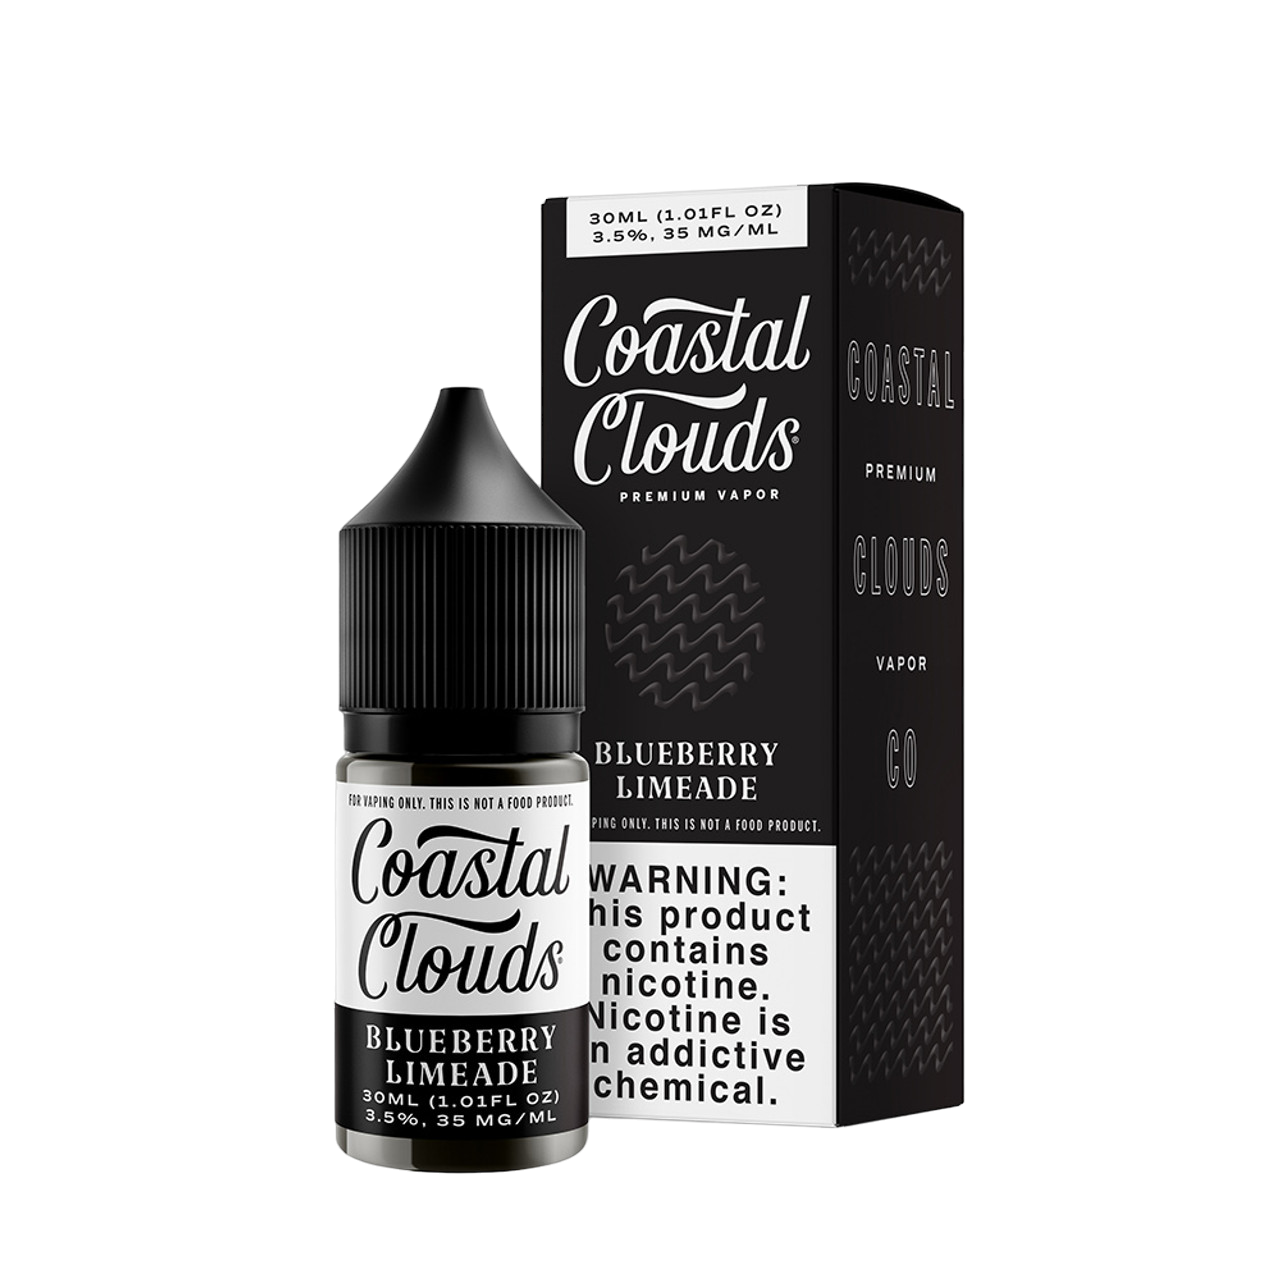 Coastal Clouds Premium Vapor Nicotine Salt E-Liquid 30ML Blueberry Limeade